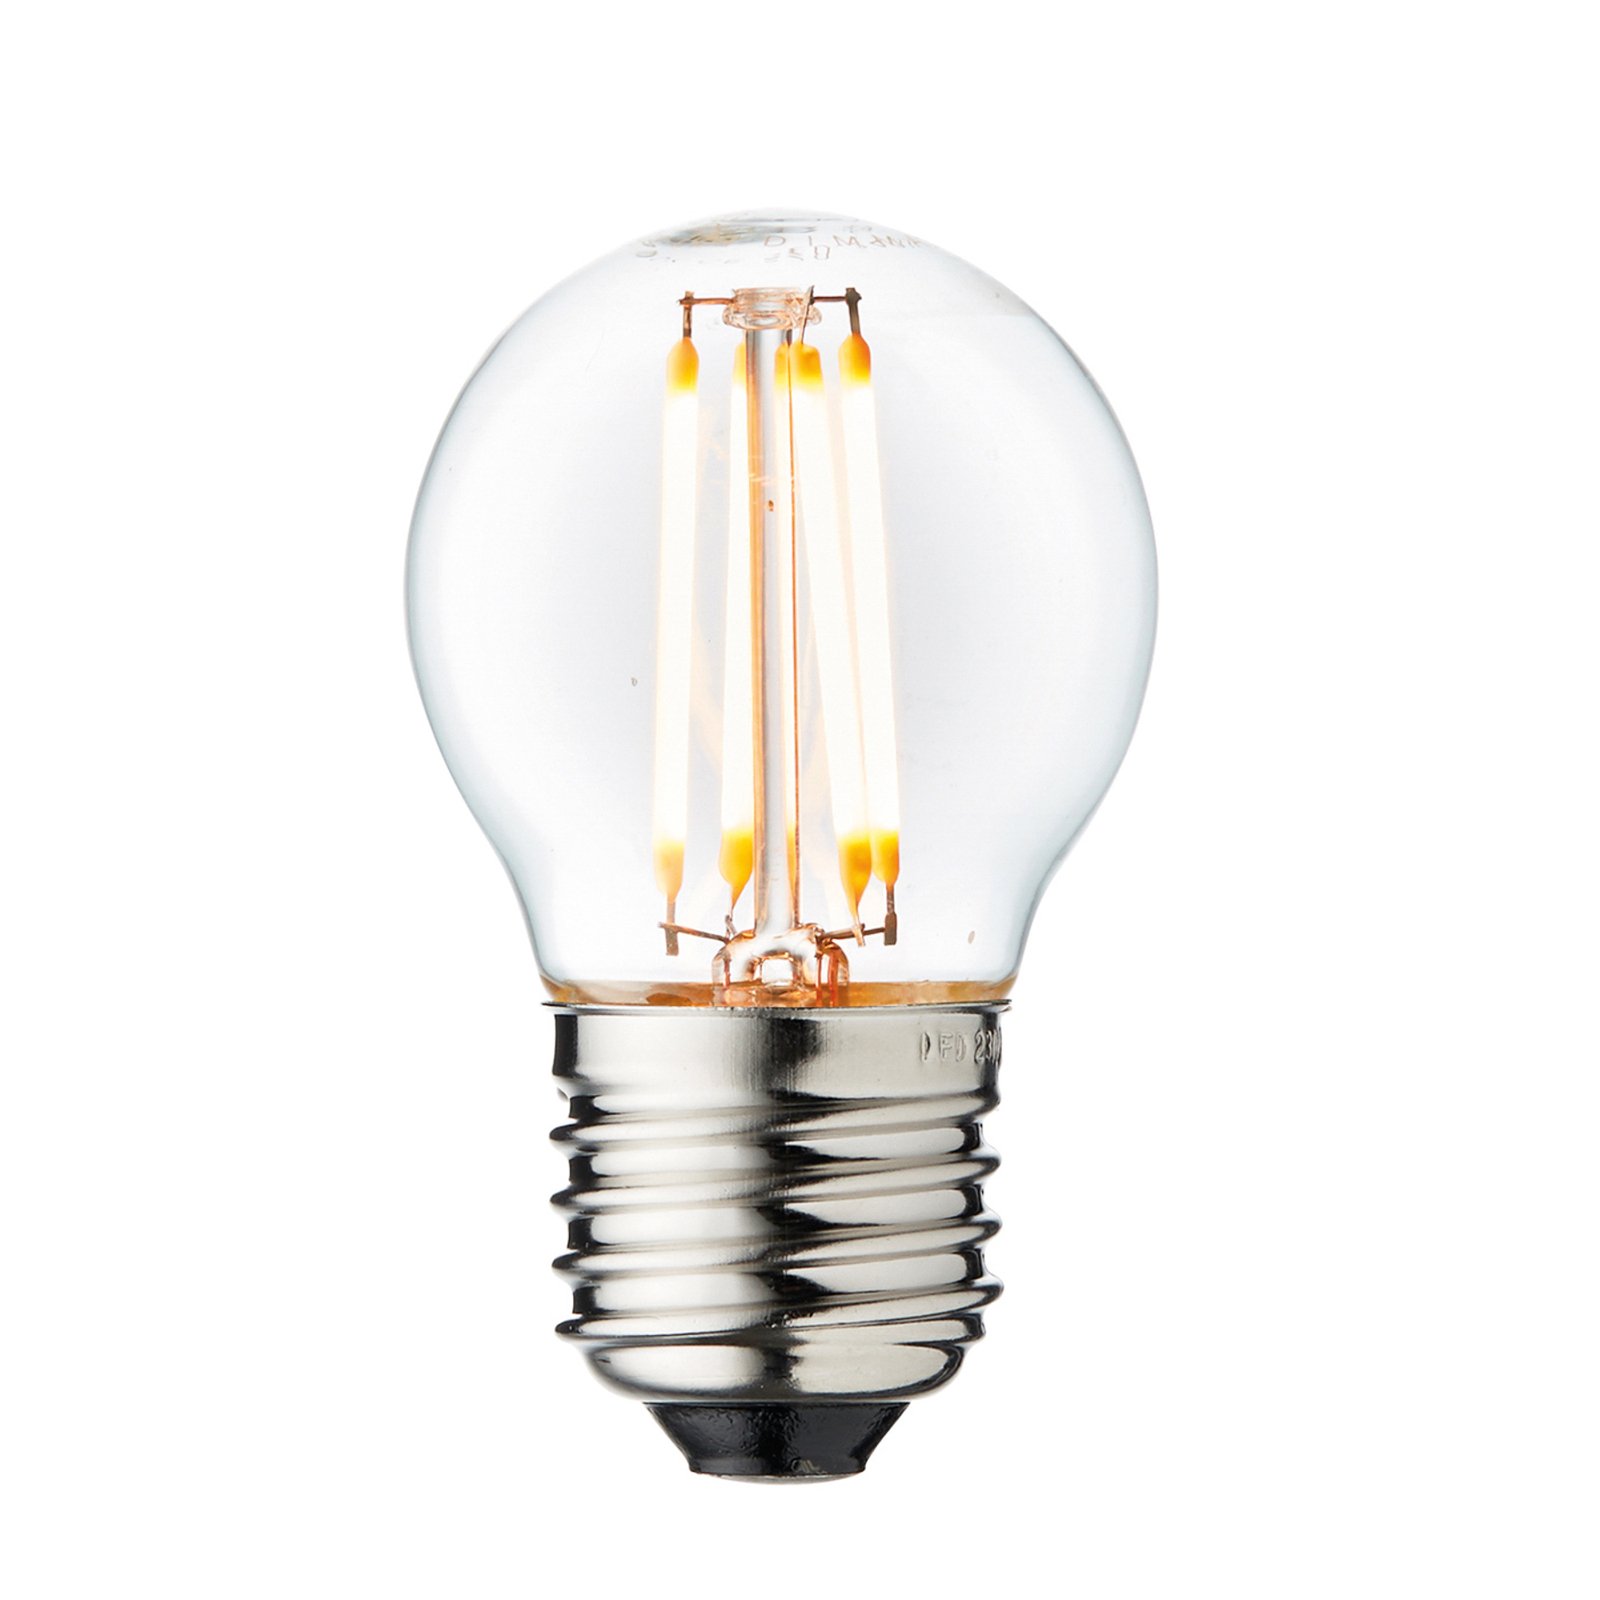 Arbitraire LED lamp, E27 Ø 4,5 cm 3,5W 2.200K dimbaar